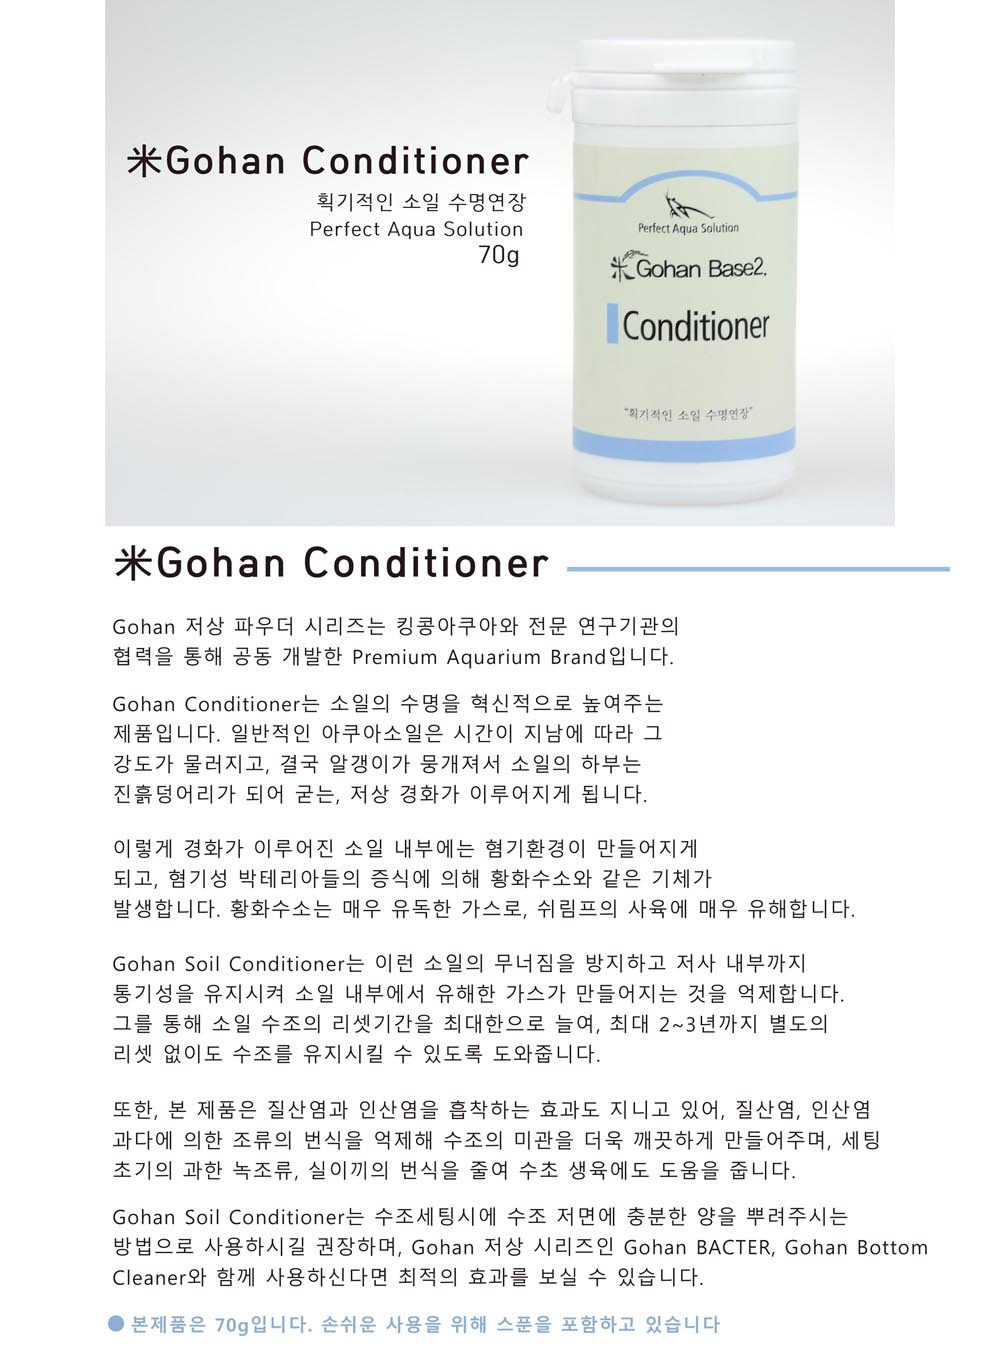 PAS Base 2 고한 컨디셔너 GoHan Conditioner 70g 메인 도매가 8,000원 판매가 15,000원.jpg